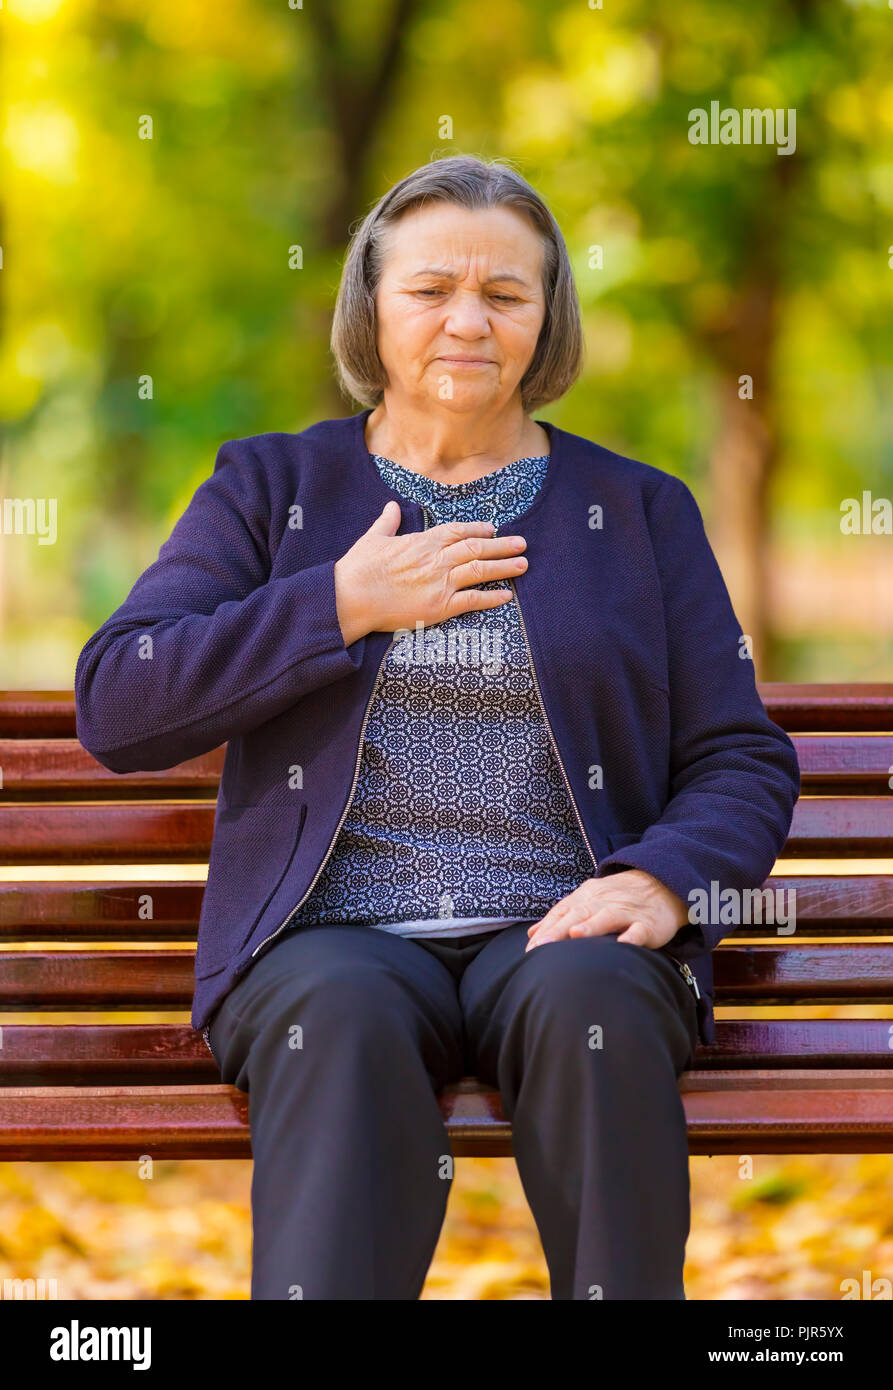 Senior lady serrant sa poitrine de douleur dès les premiers signes de l'angine ou un infarctus du myocarde ou crise cardiaque, haut du corps en stationnement sur une journée d'automne Banque D'Images